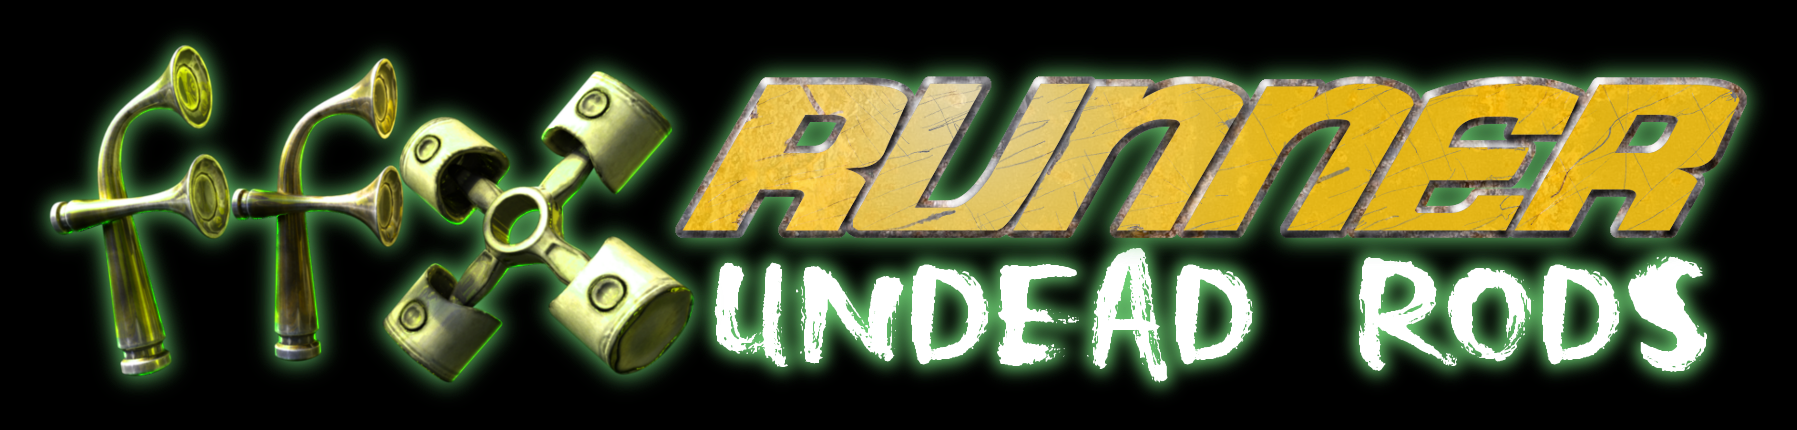 FFX Rinner Undead Rods